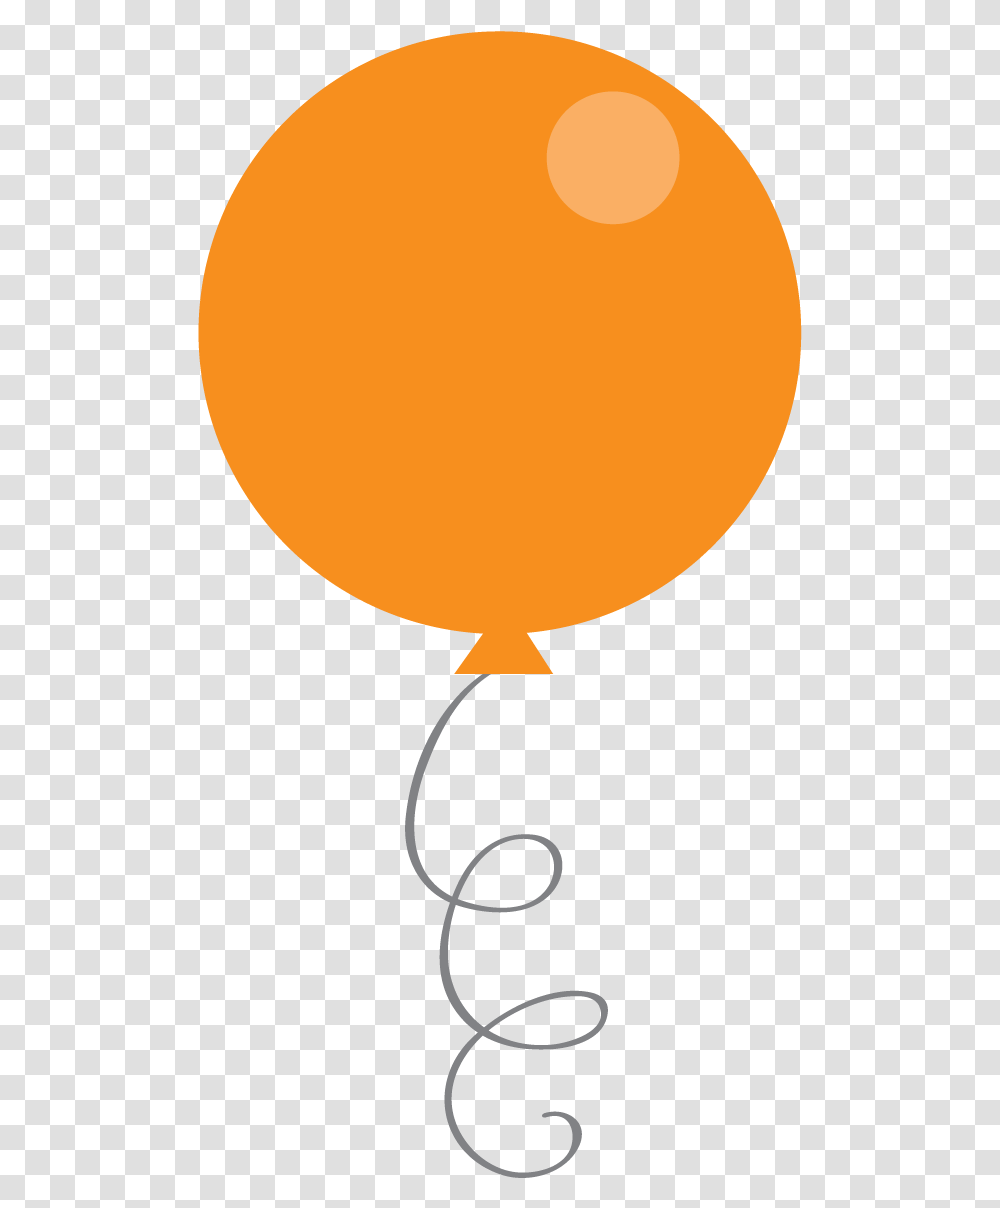 Circle, Balloon, Lamp Transparent Png